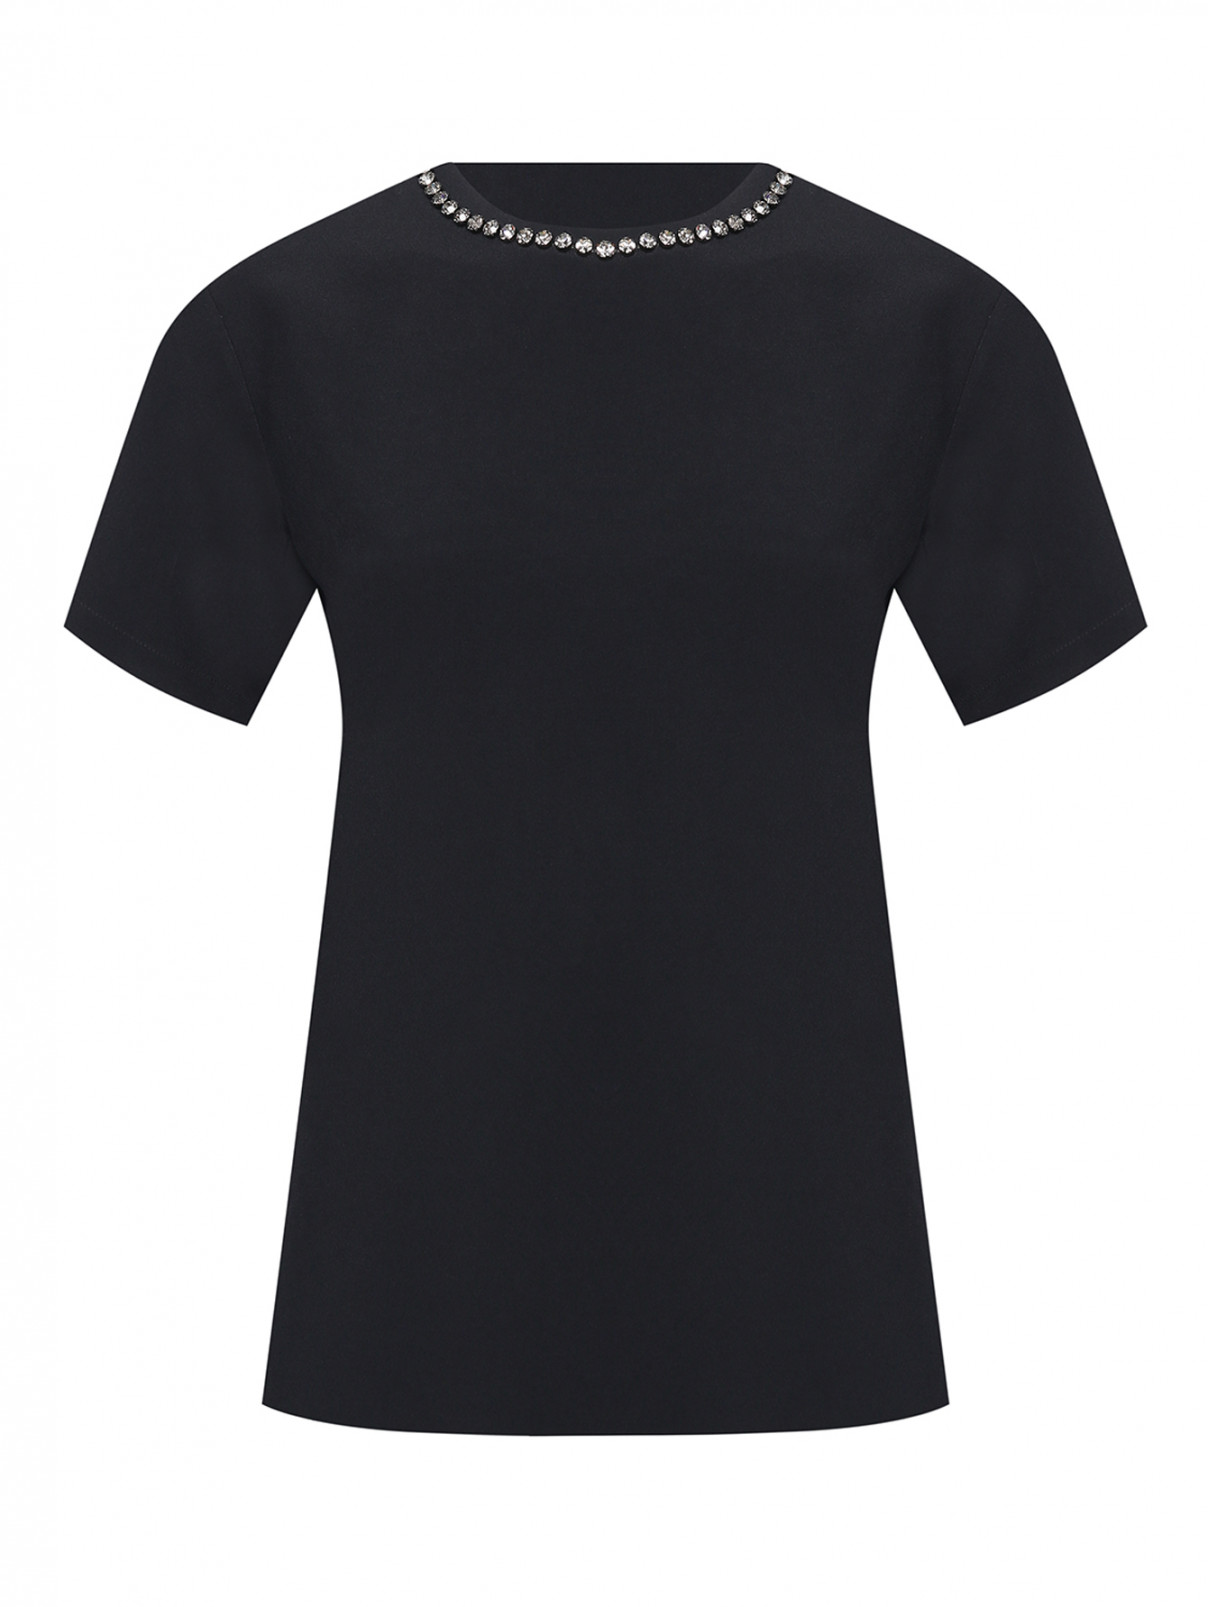 Блуза с коротким рукавом, декорированная кристаллами N21  –  Общий вид  – Цвет:  Черный